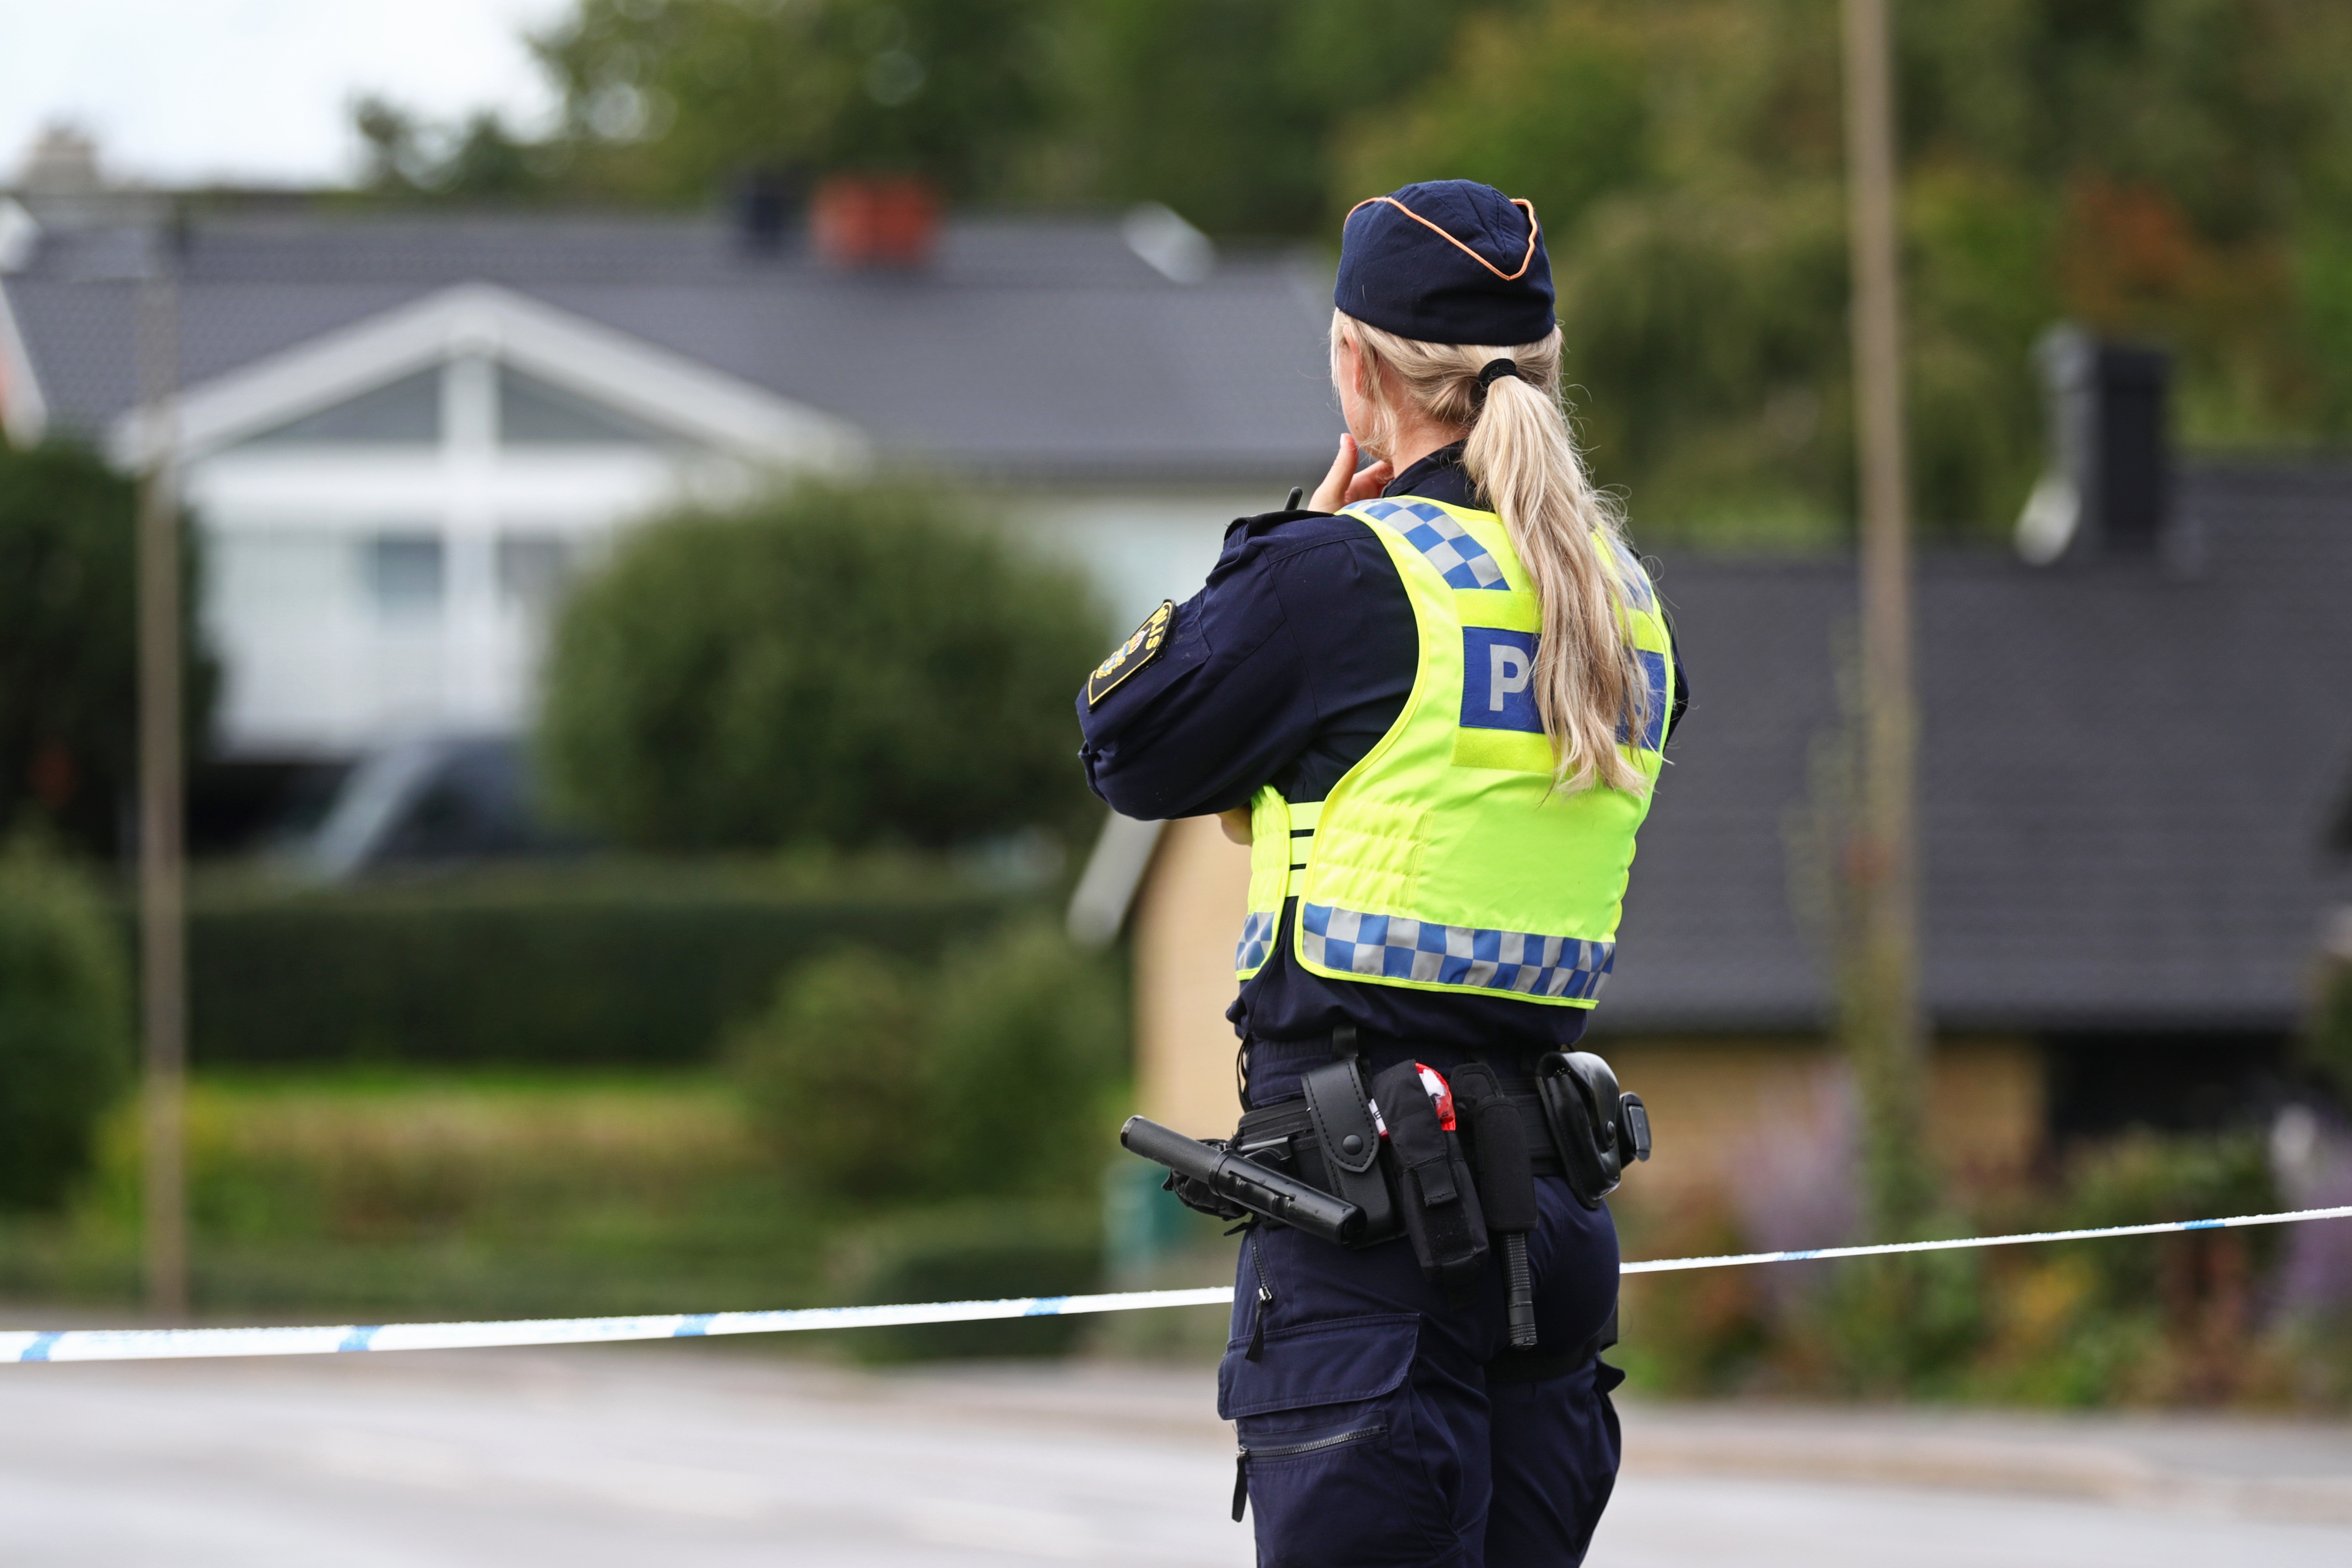 Σουηδία: Η εξάπλωση της βίας των συμμοριών καταστρέφει την ειρηνική εικόνα της χώρας